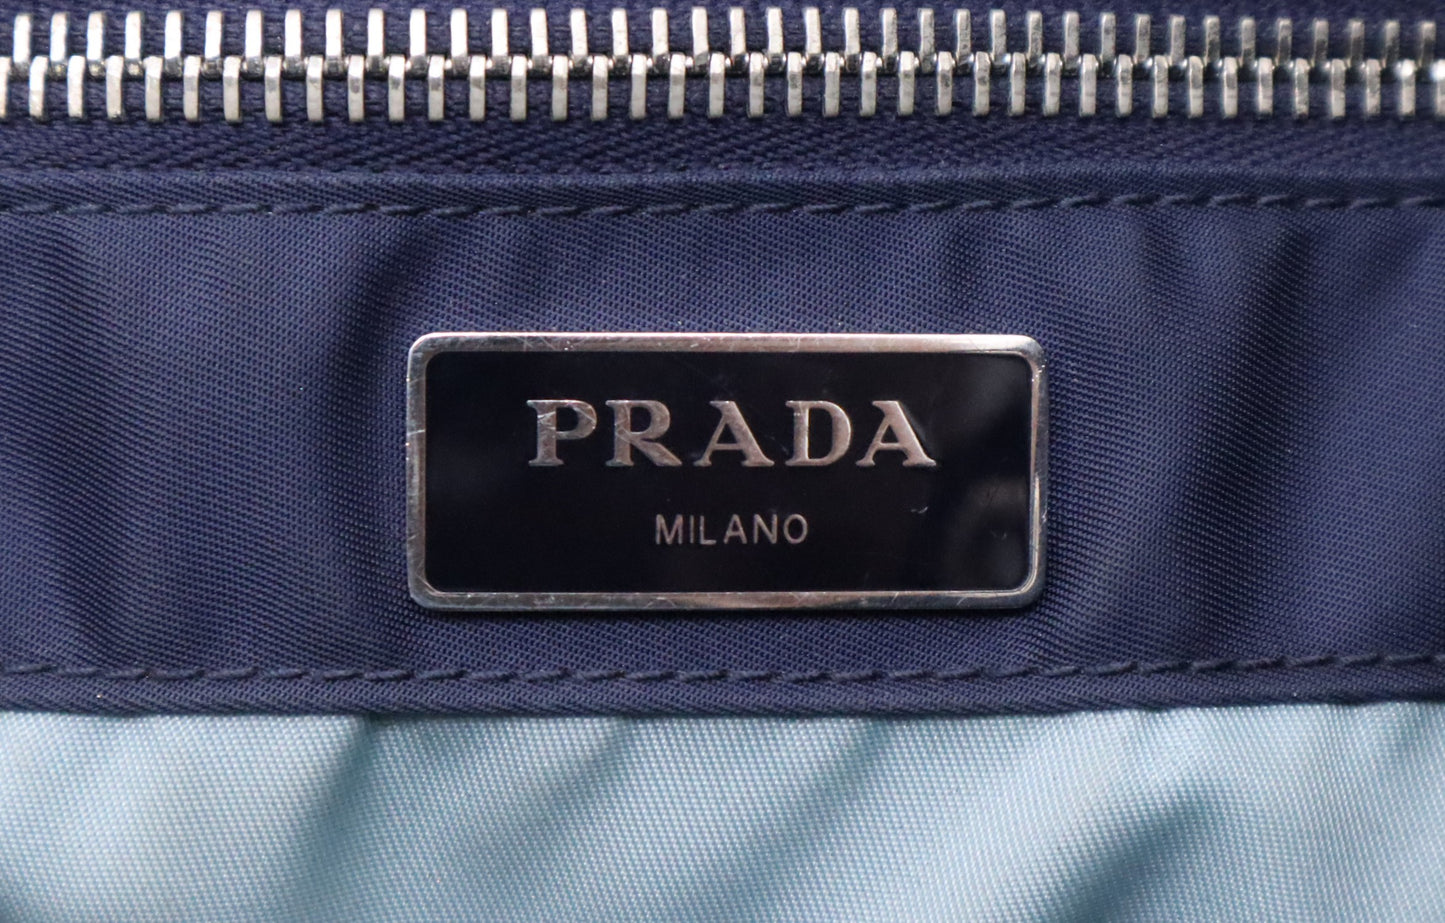 Prada Tote Bag in Navy Blue Nylon